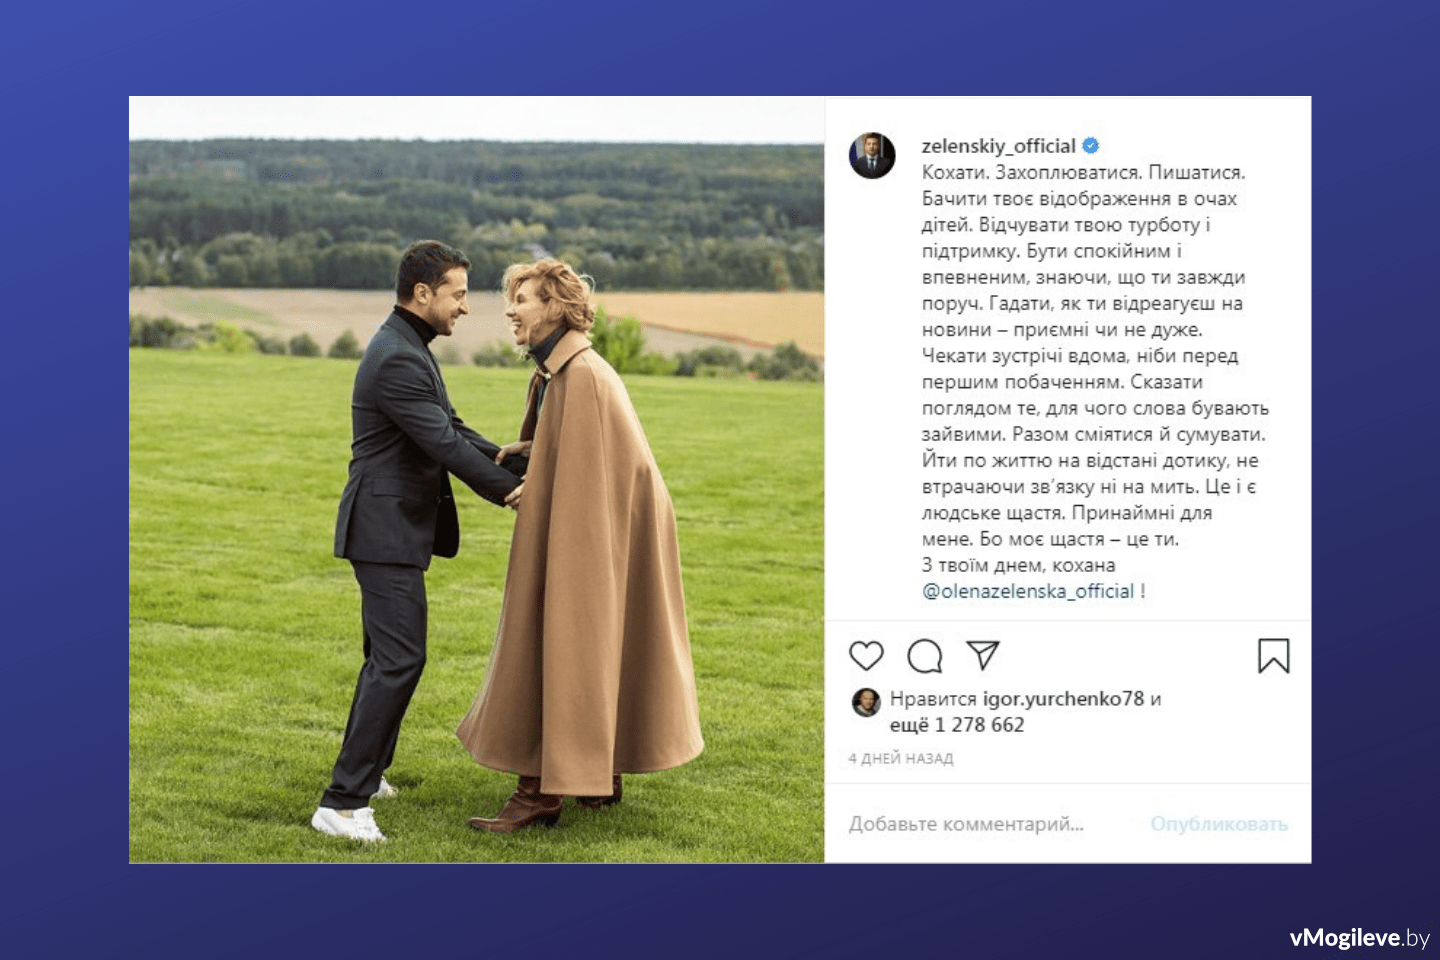 Скриншот с официального аккаунта Владимира Зеленского в Instagram